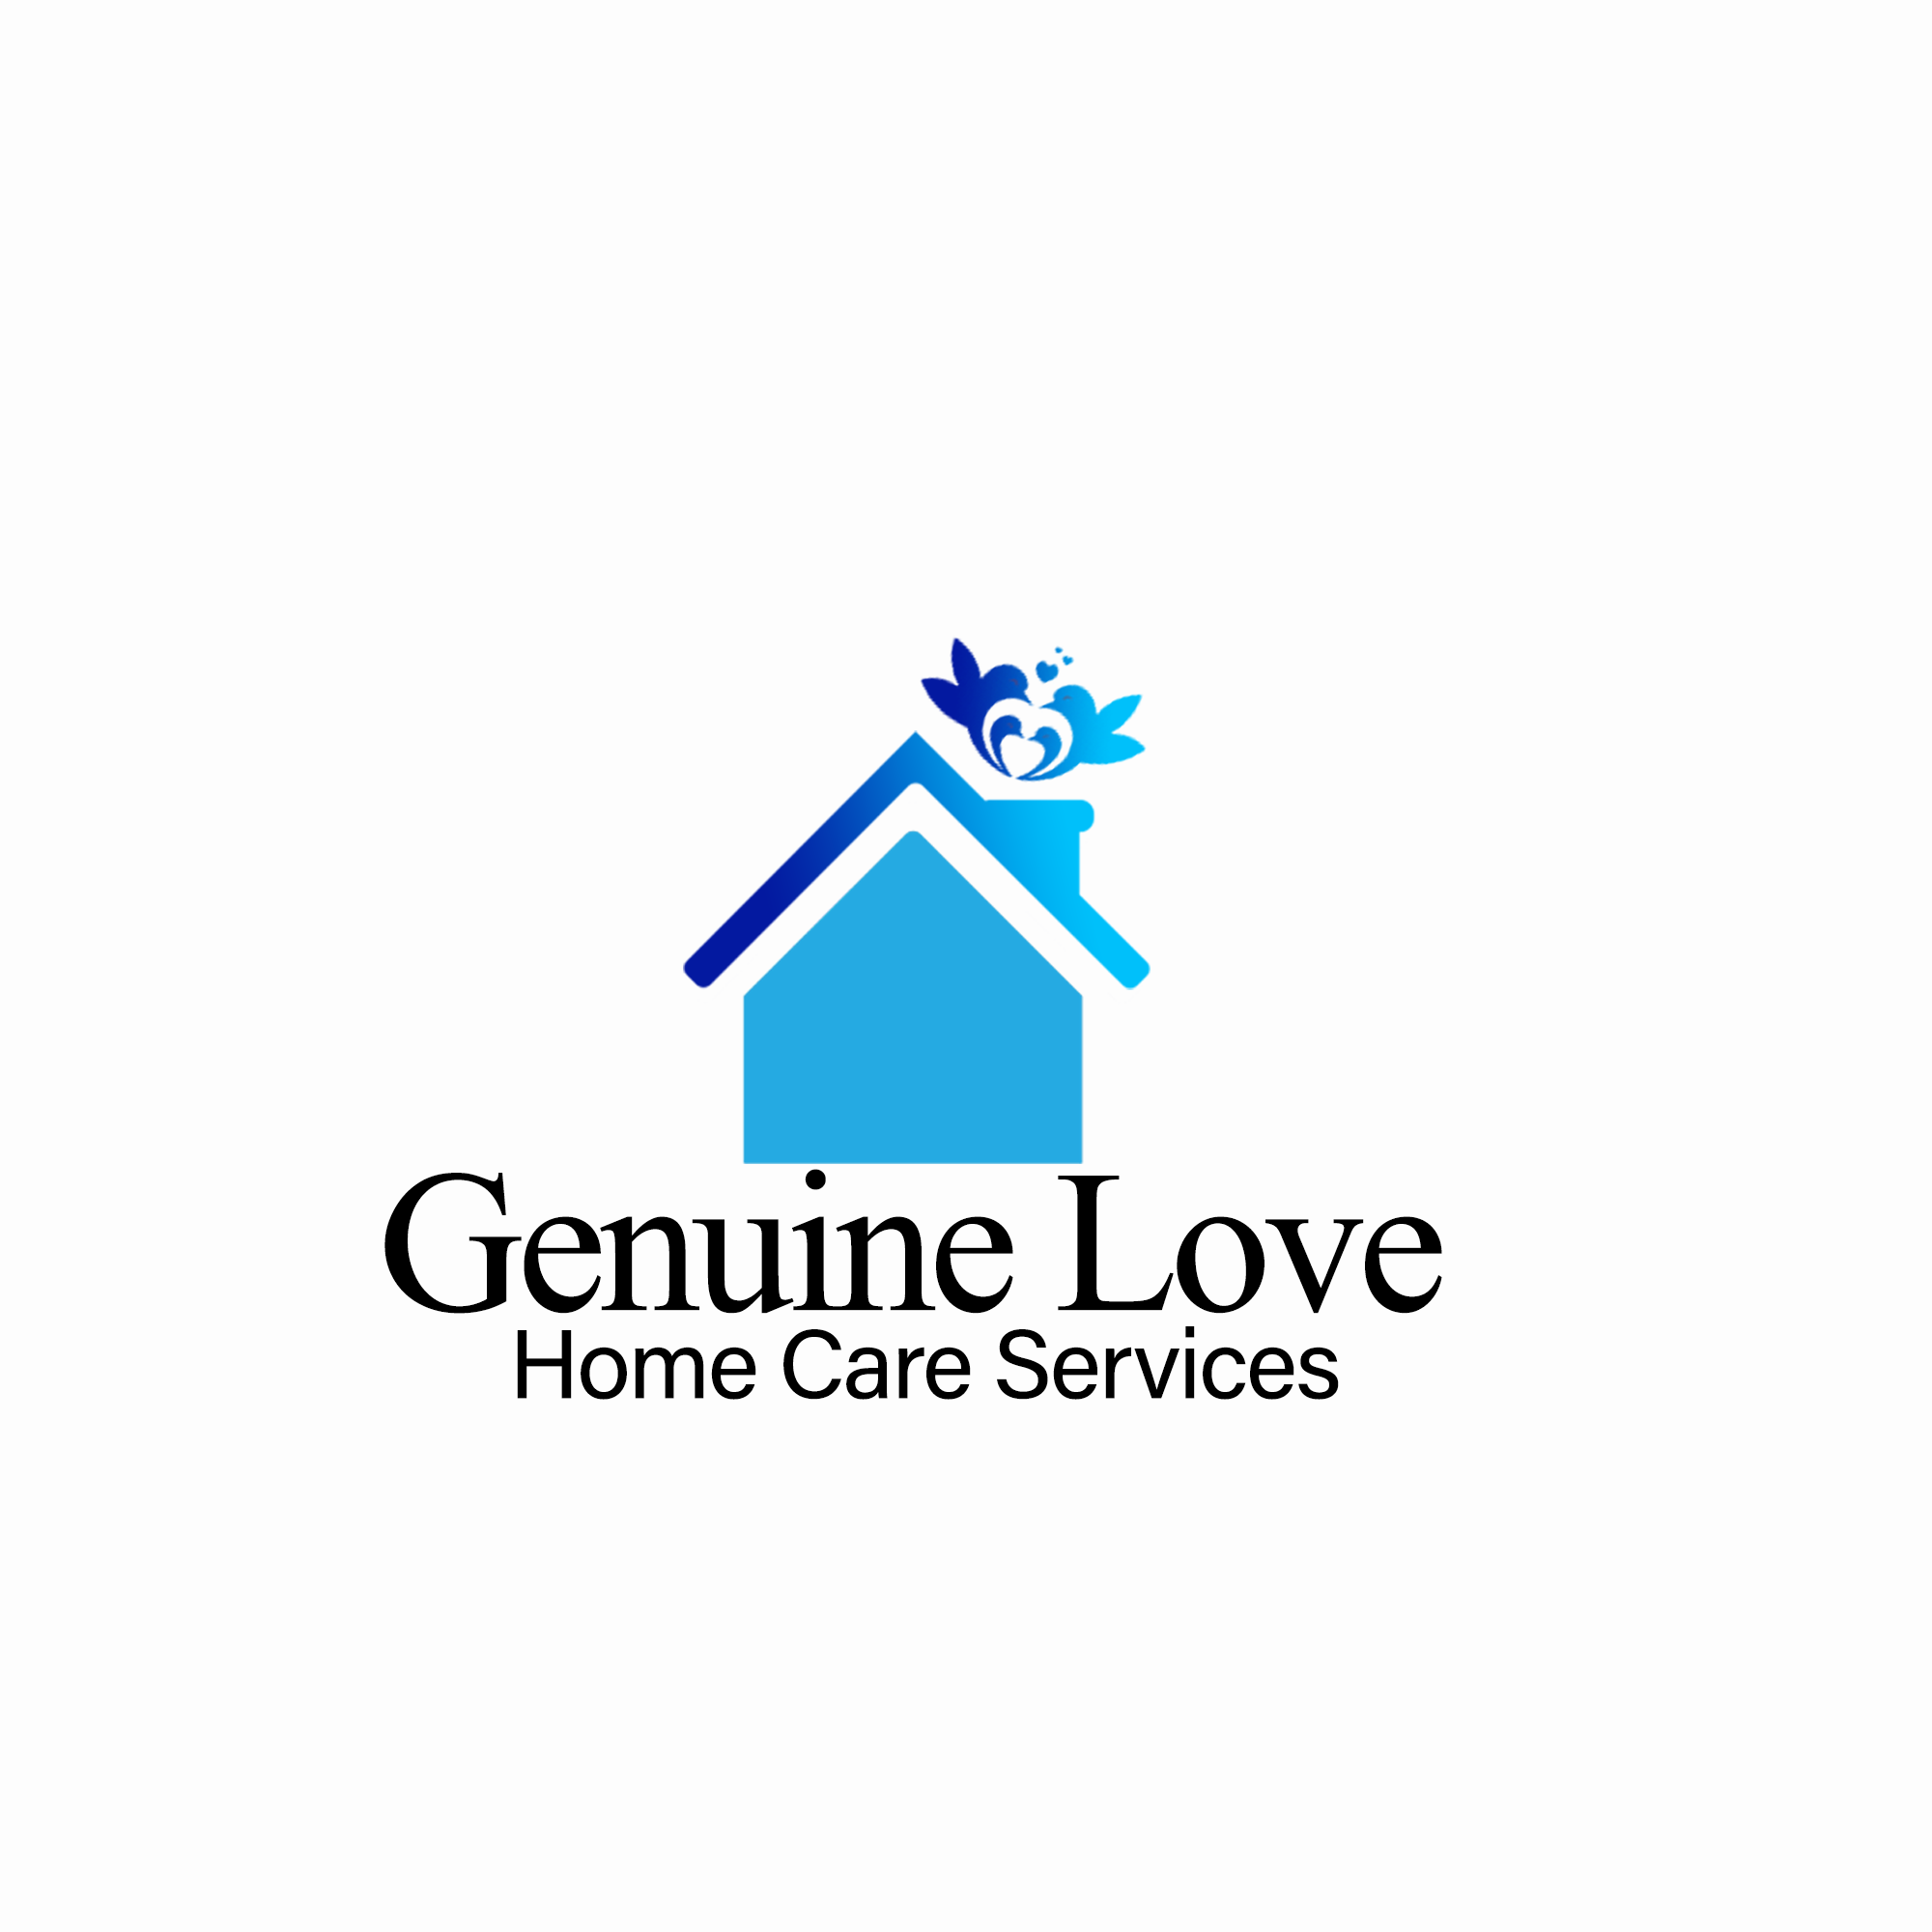 Genuine Love Home Care Services 3945 SE 15th St Suite 206, Del City Oklahoma 73115